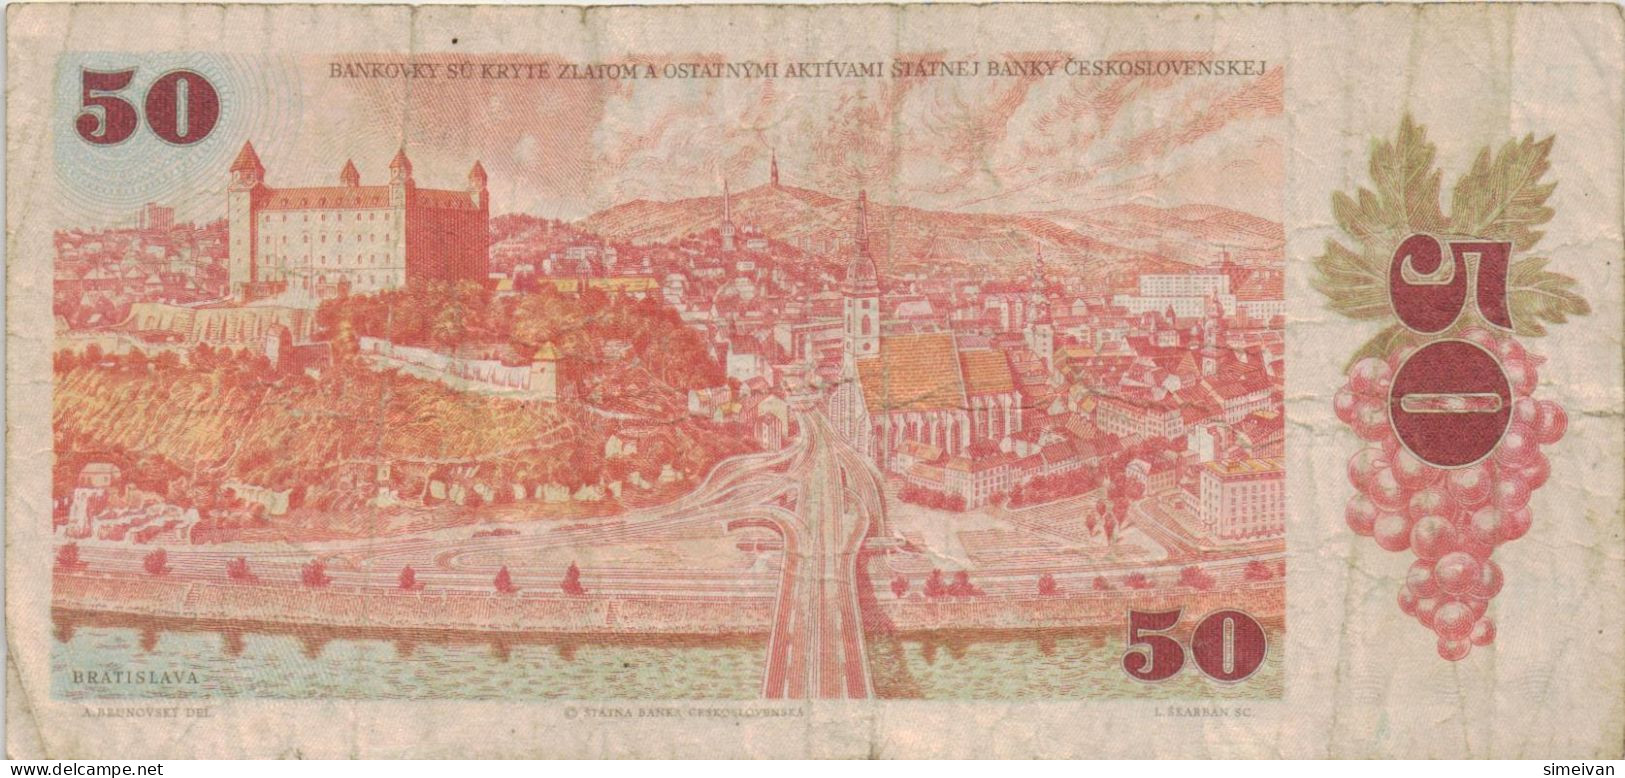 Czechoslovakia 50 Korun 1987 P-96a Banknote Europe Currency Tchécoslovaquie Tschechoslowakei #5260 - Tsjechoslowakije